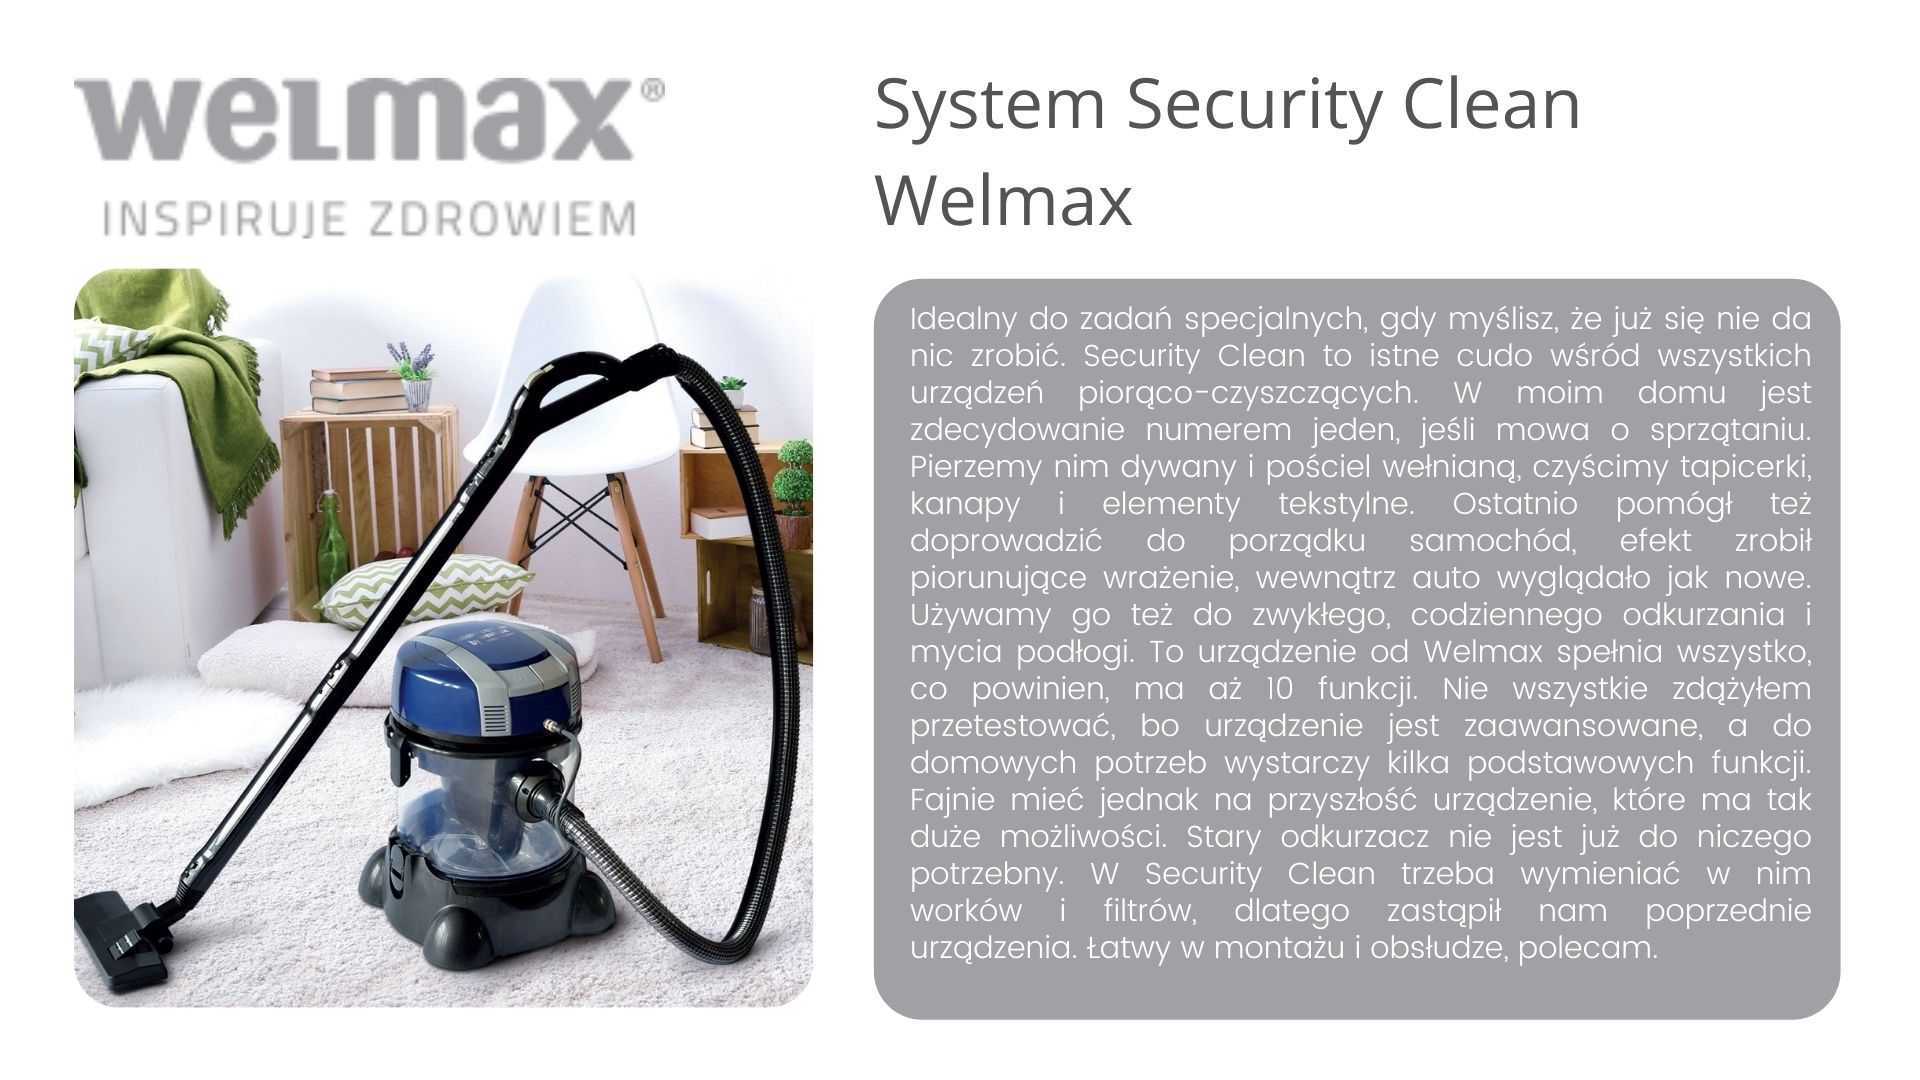 Security clean Welmax opinie 1